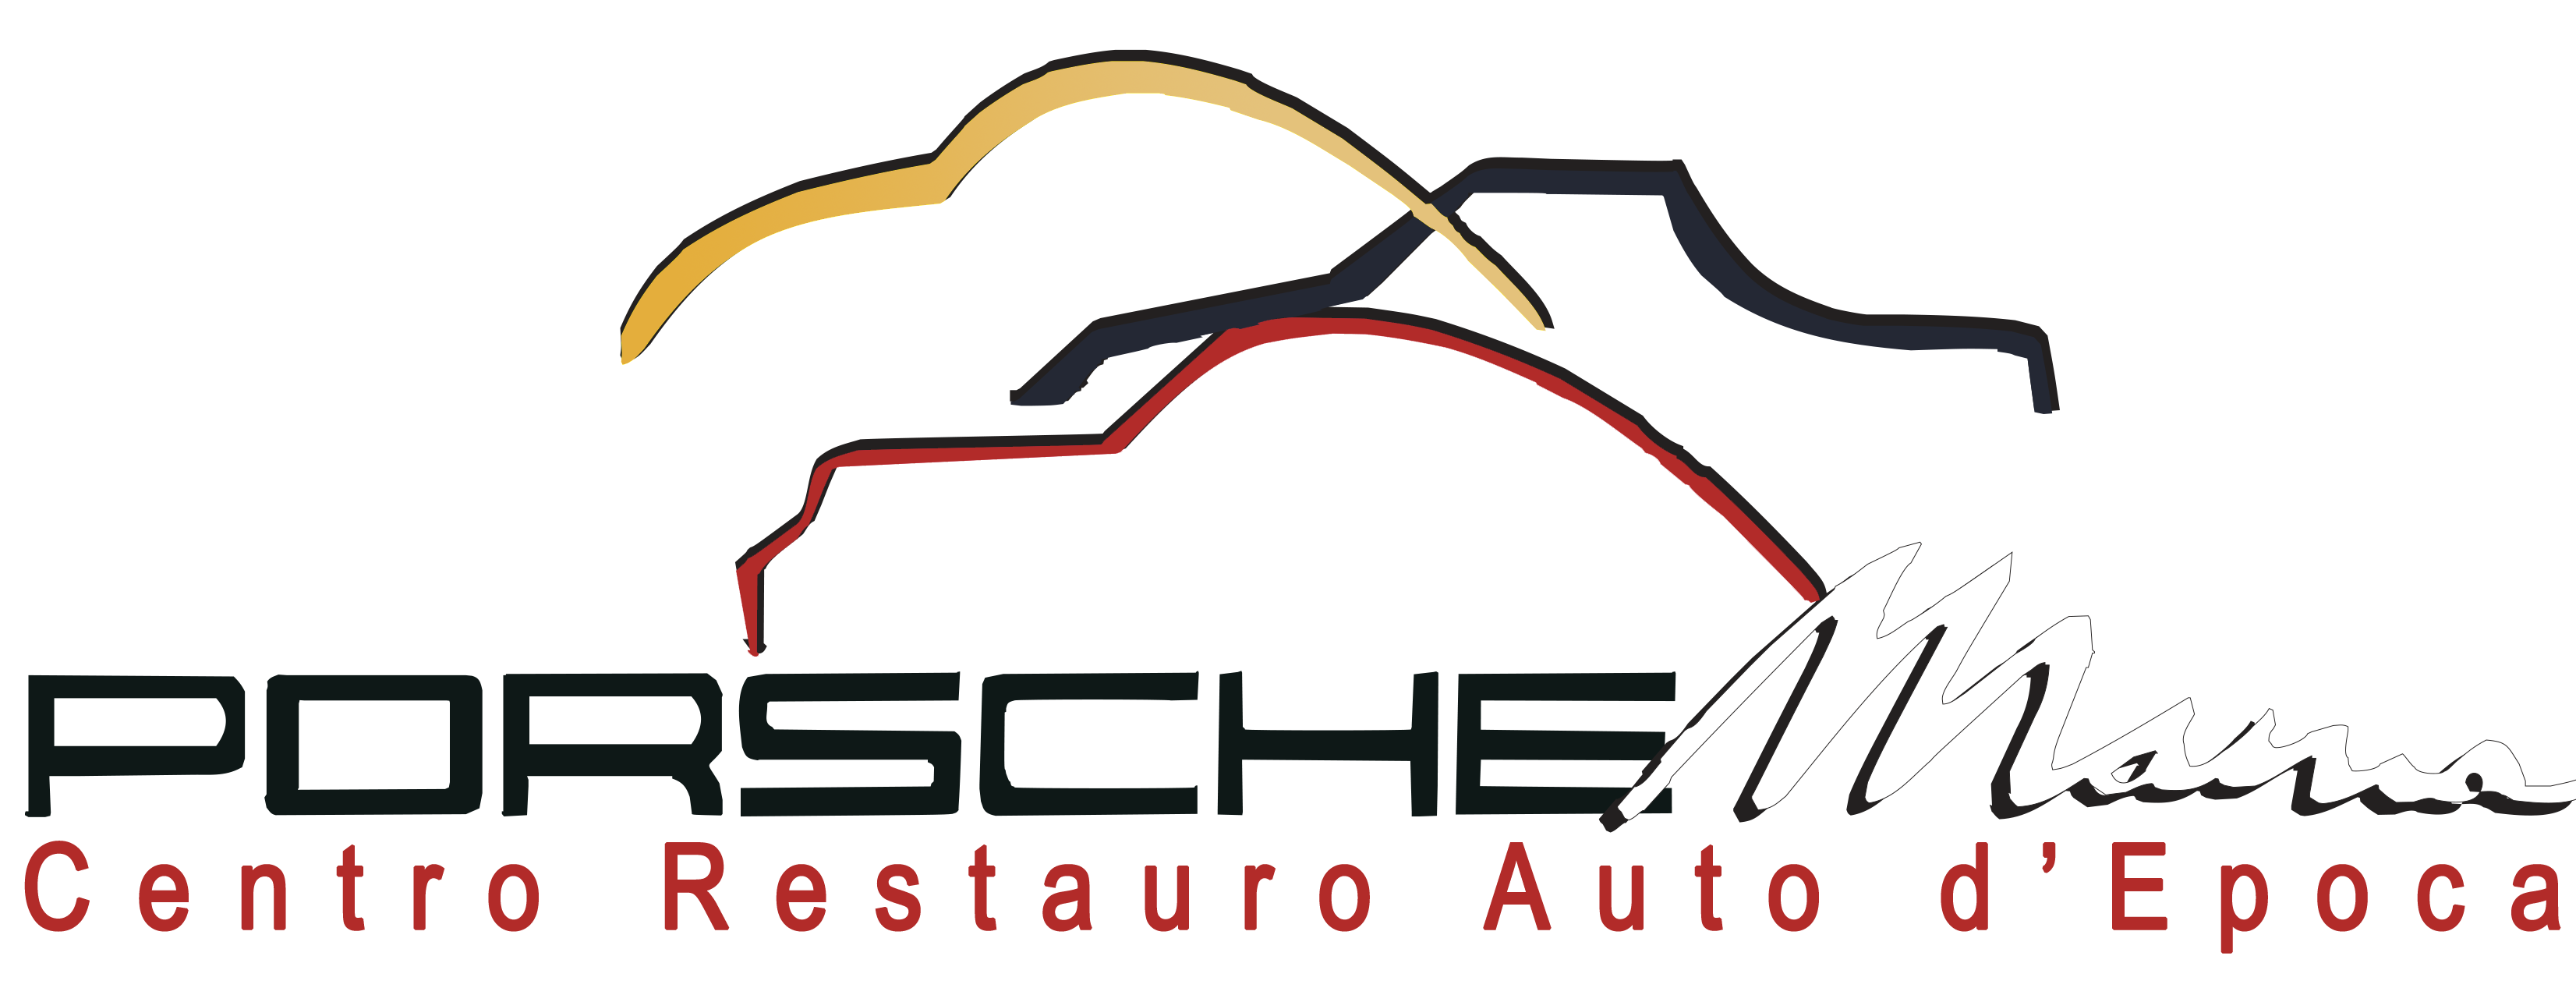 Porschemania